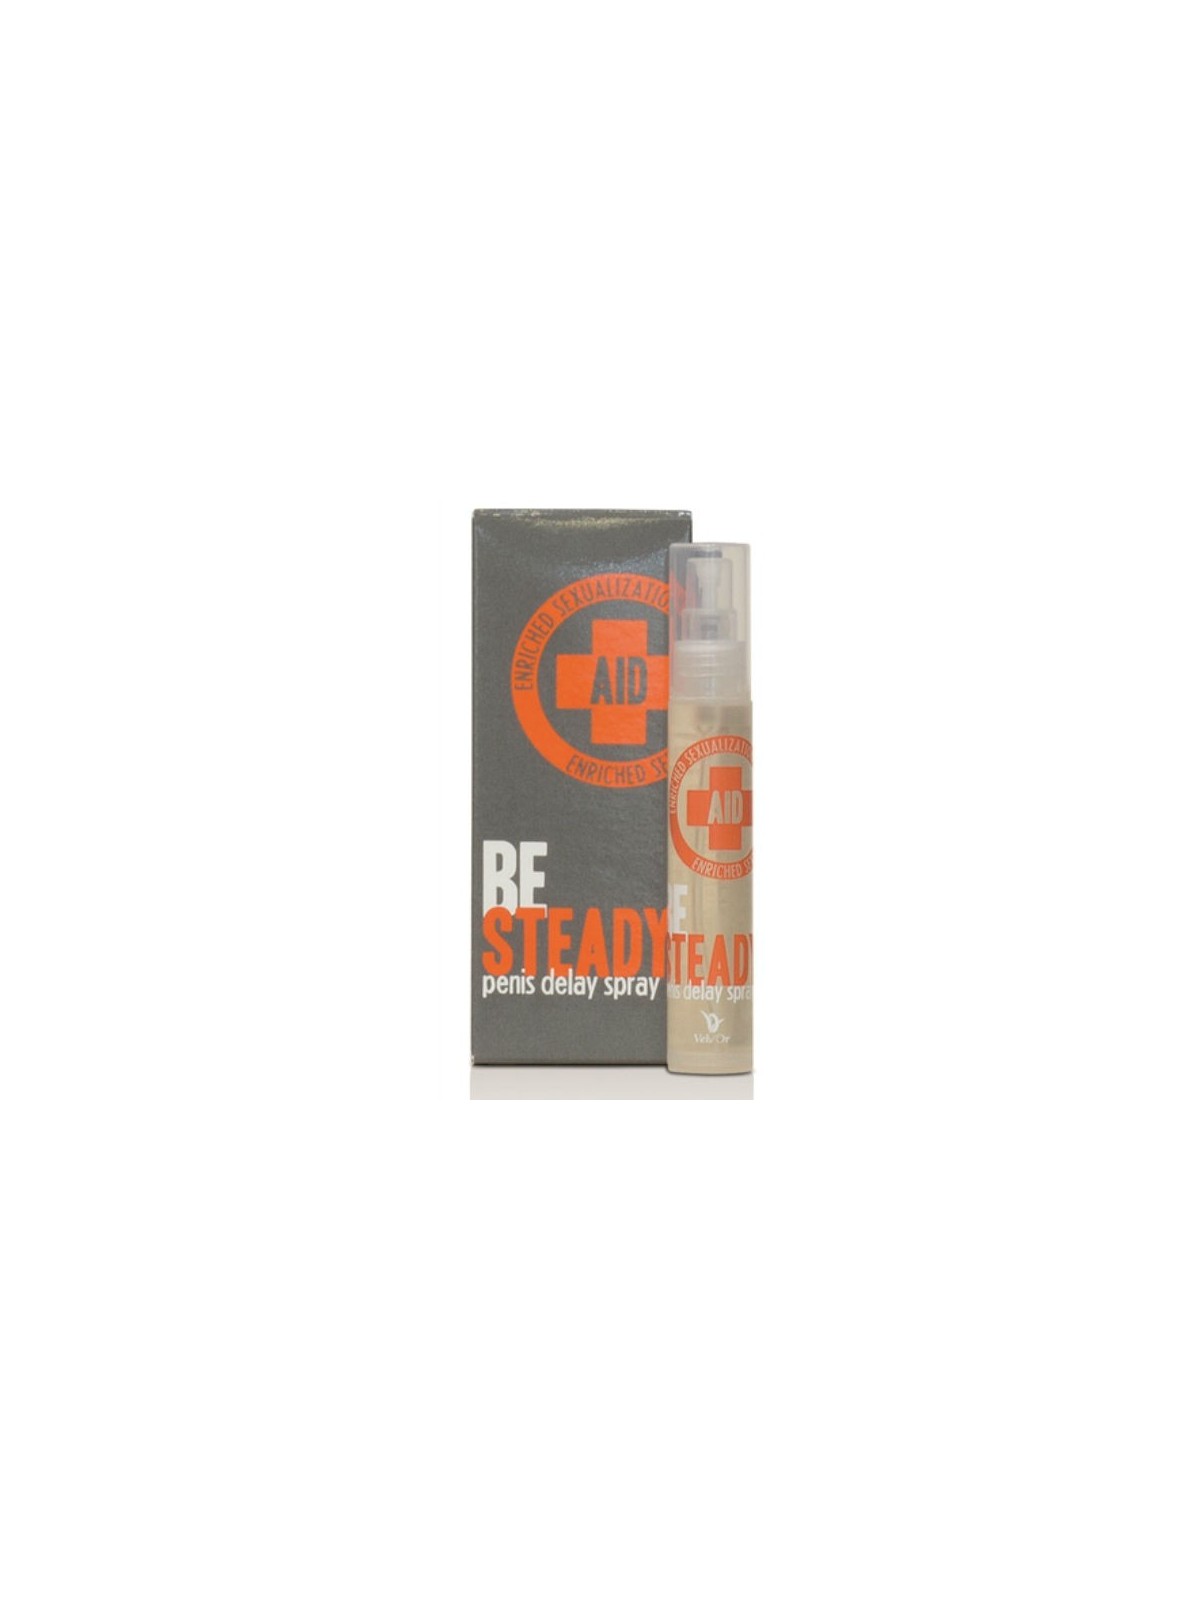 Cobeco Velv'Or Aid Spray Retardante - Comprar Retardante Cobeco - Retardantes (1)